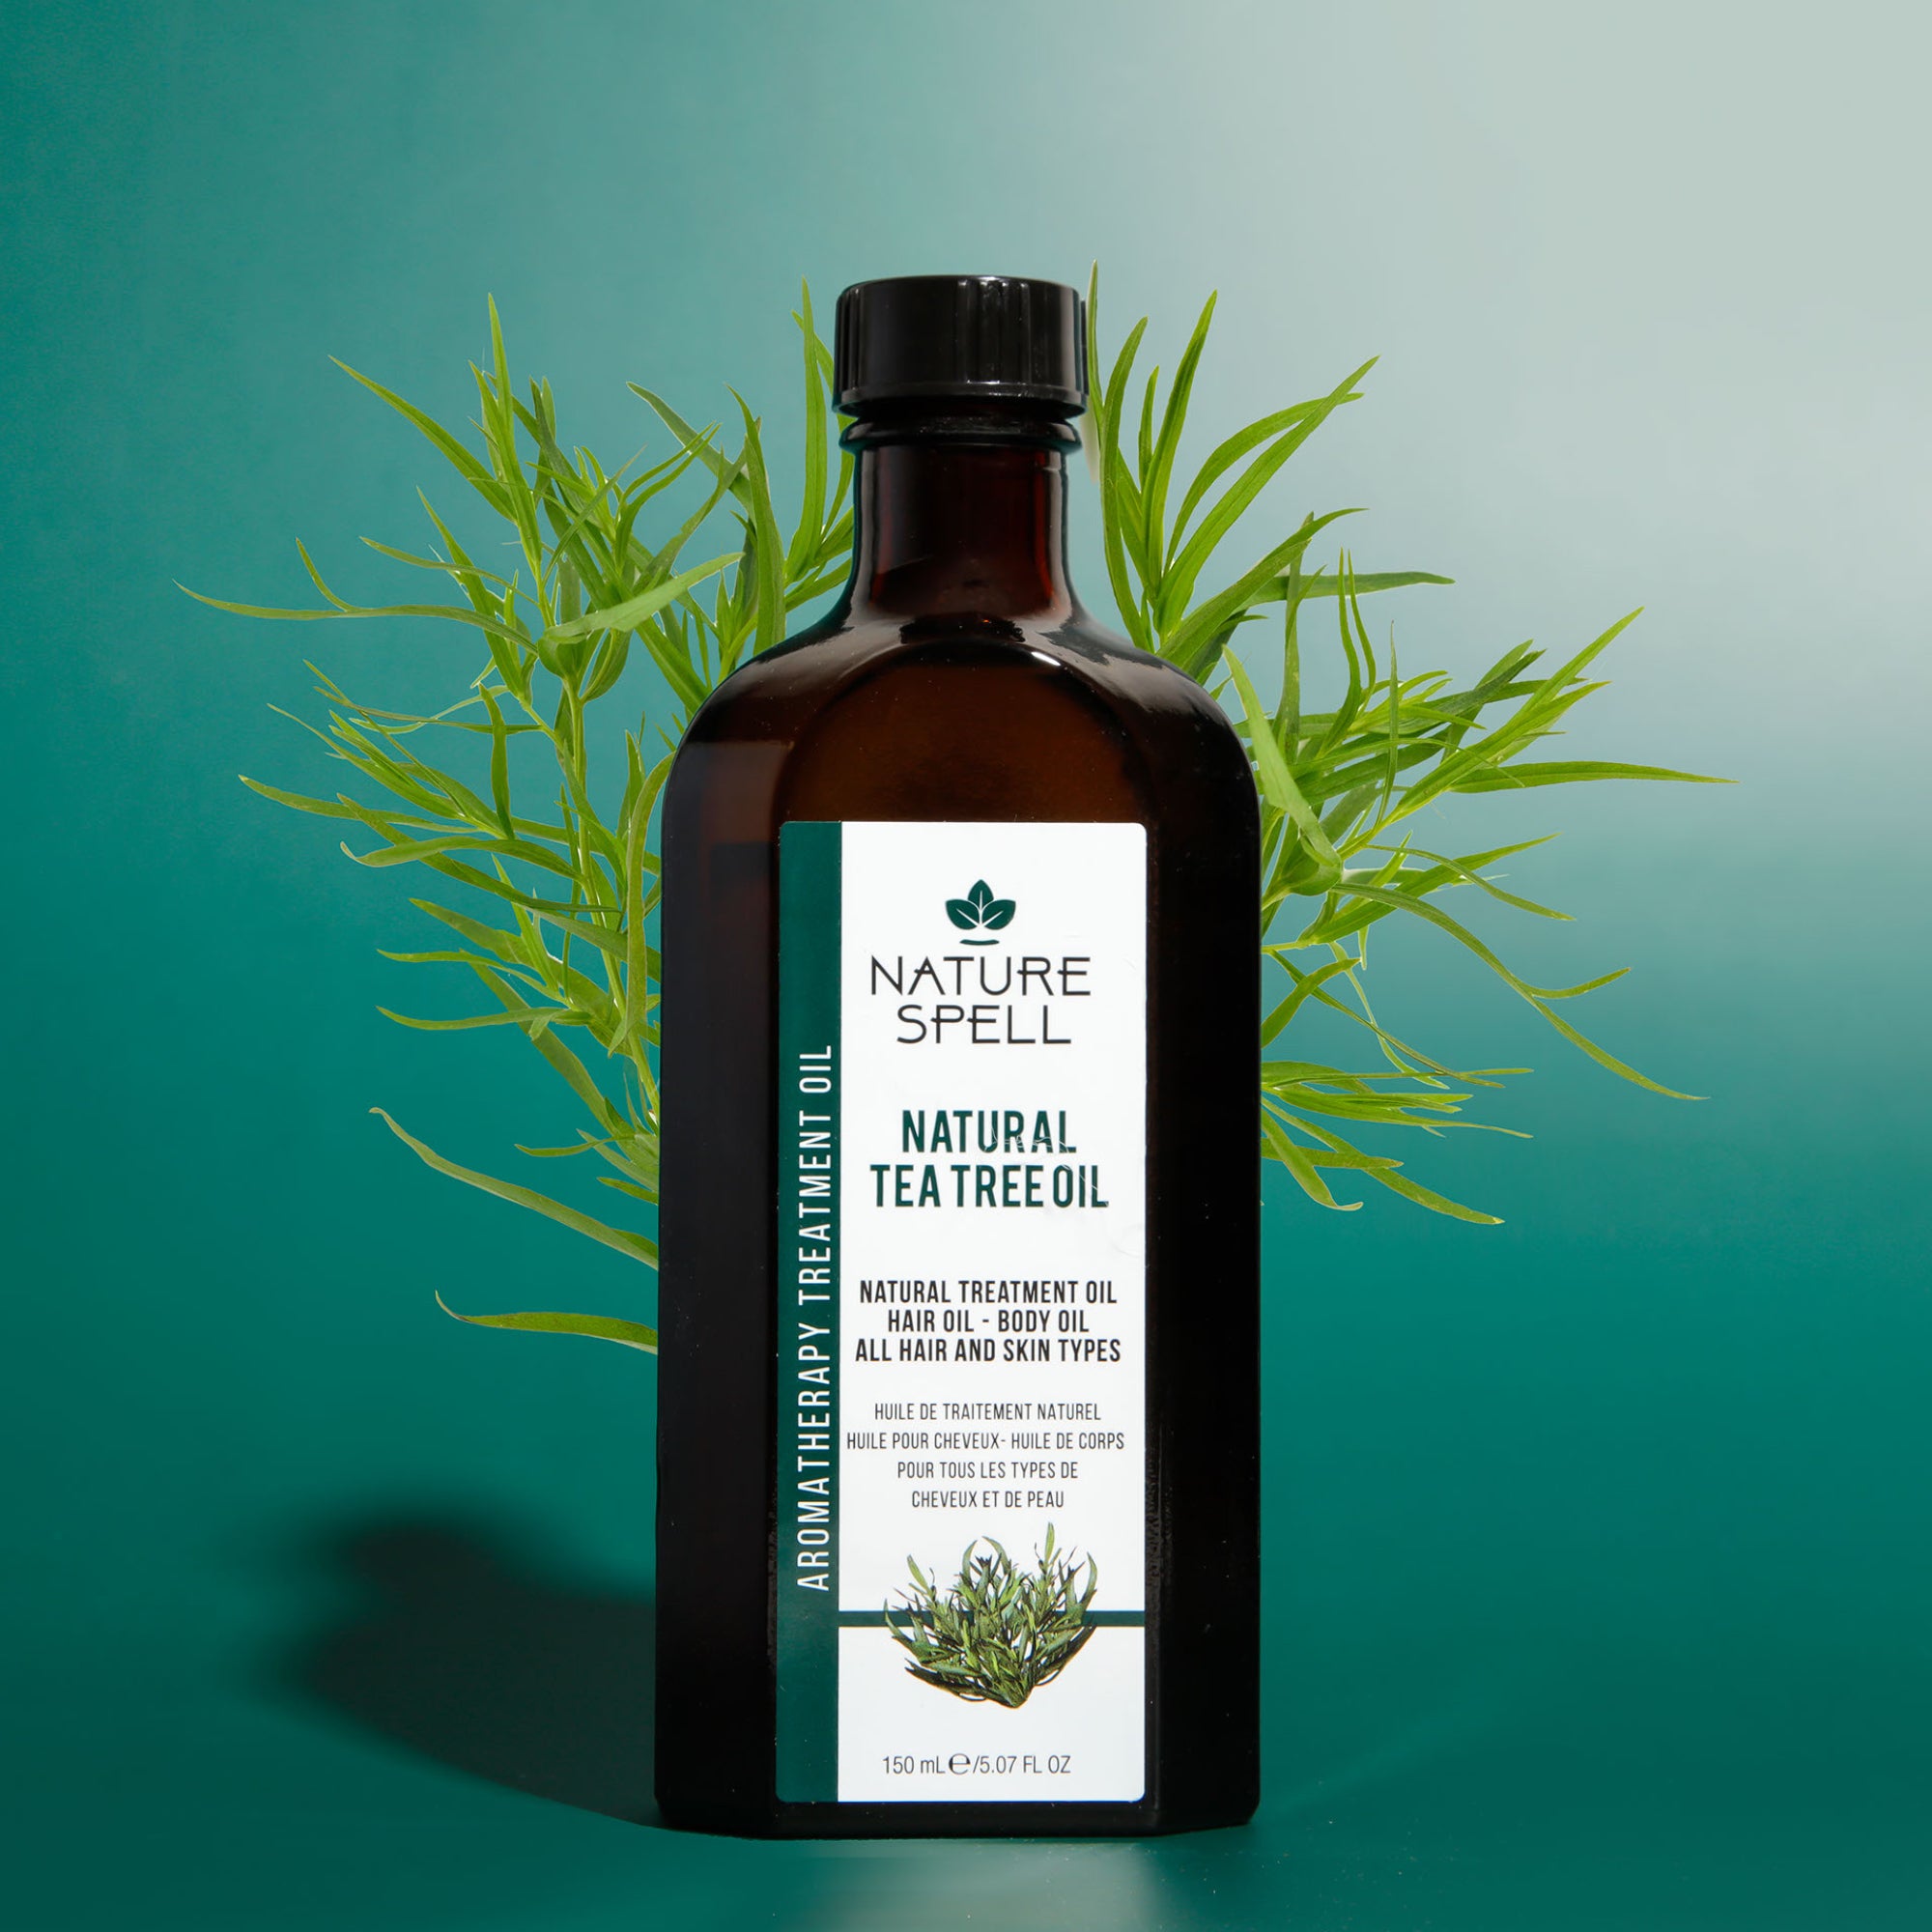 Tea Tree Oil for Hair & Skin